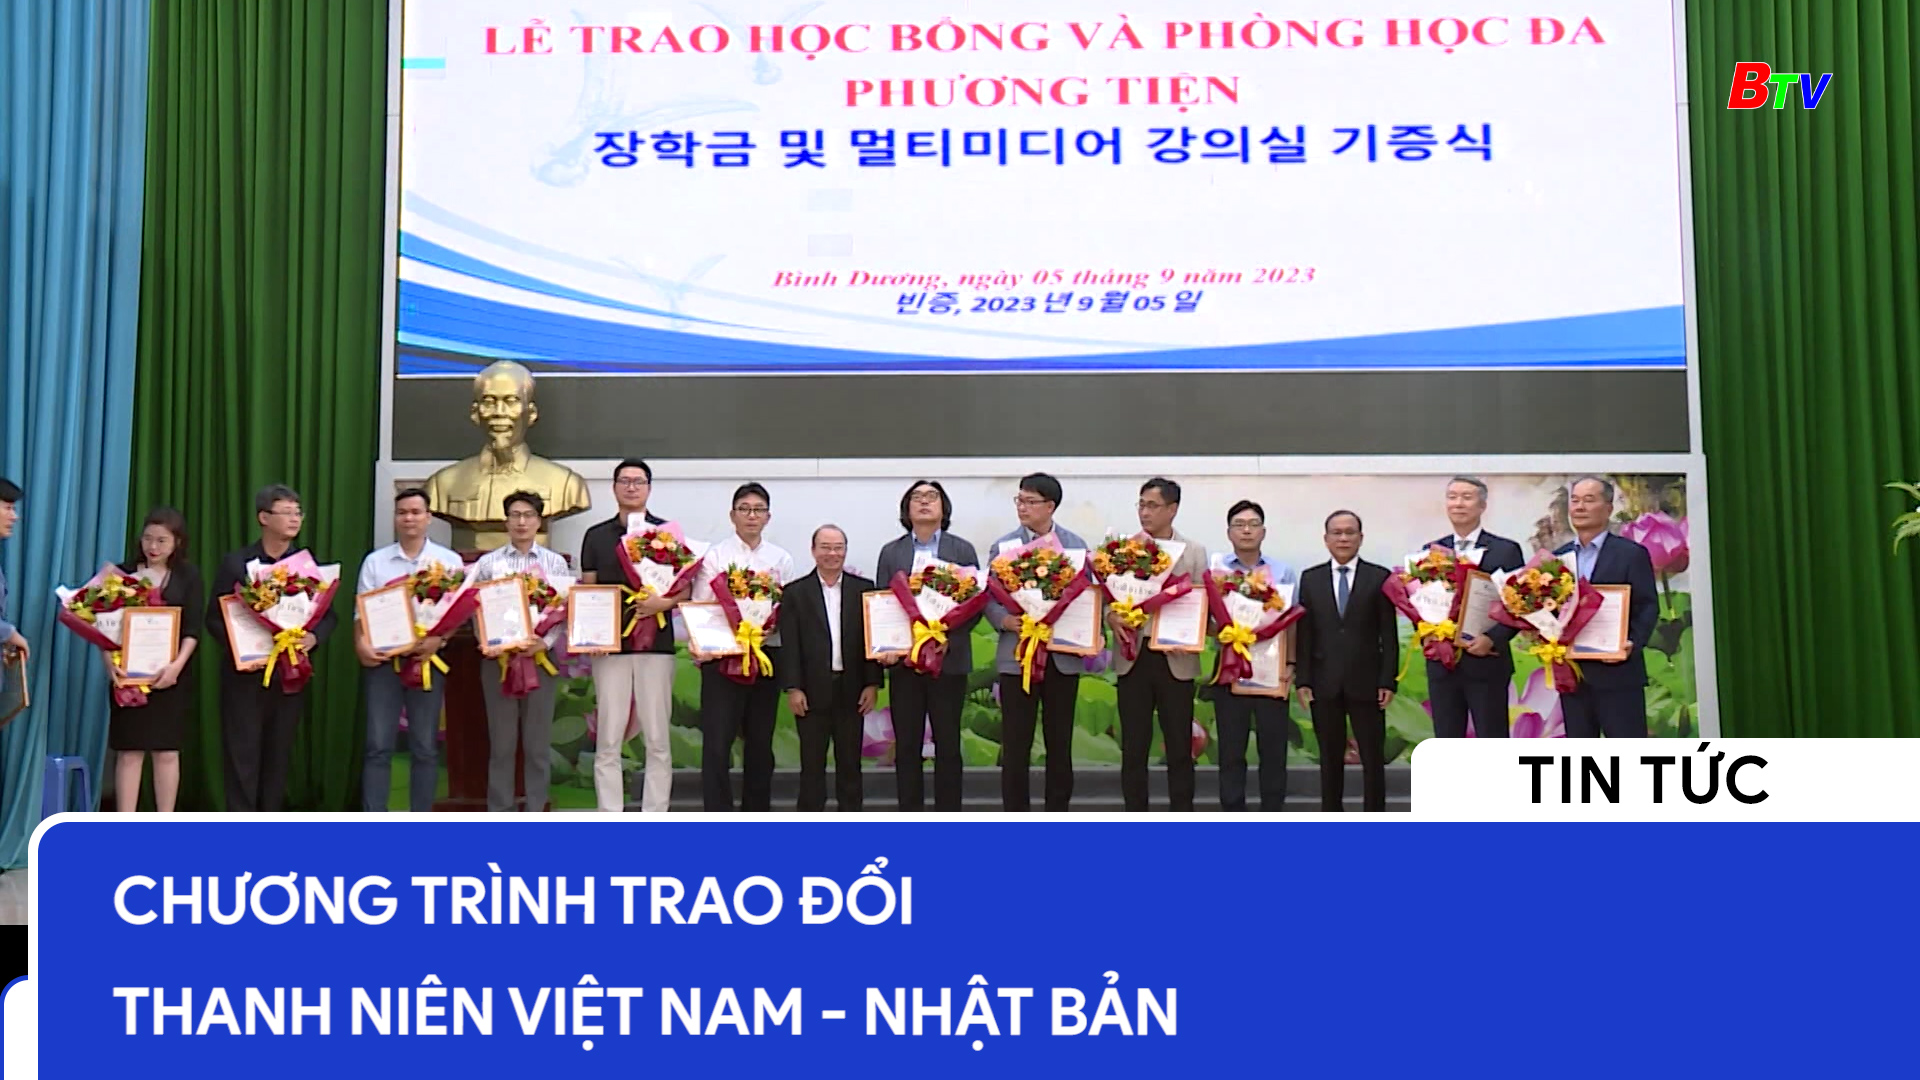 Chương trình trao đổi thanh niên Việt Nam - Nhật Bản